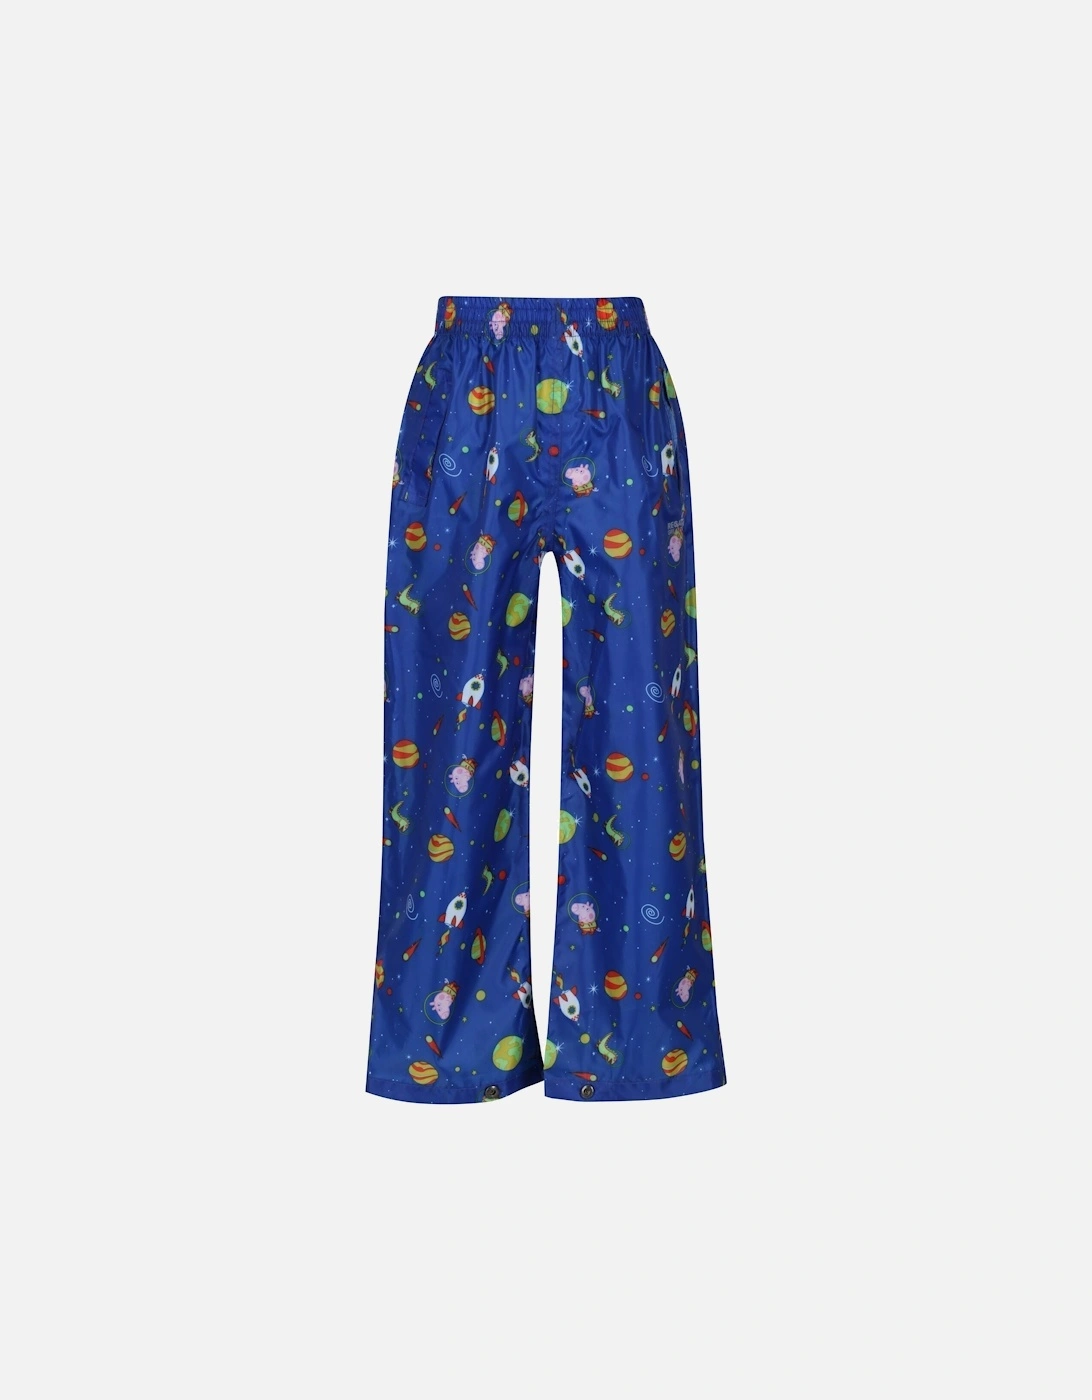 Childrens/Kids Cosmic Peppa Pig Waterproof Over Trousers